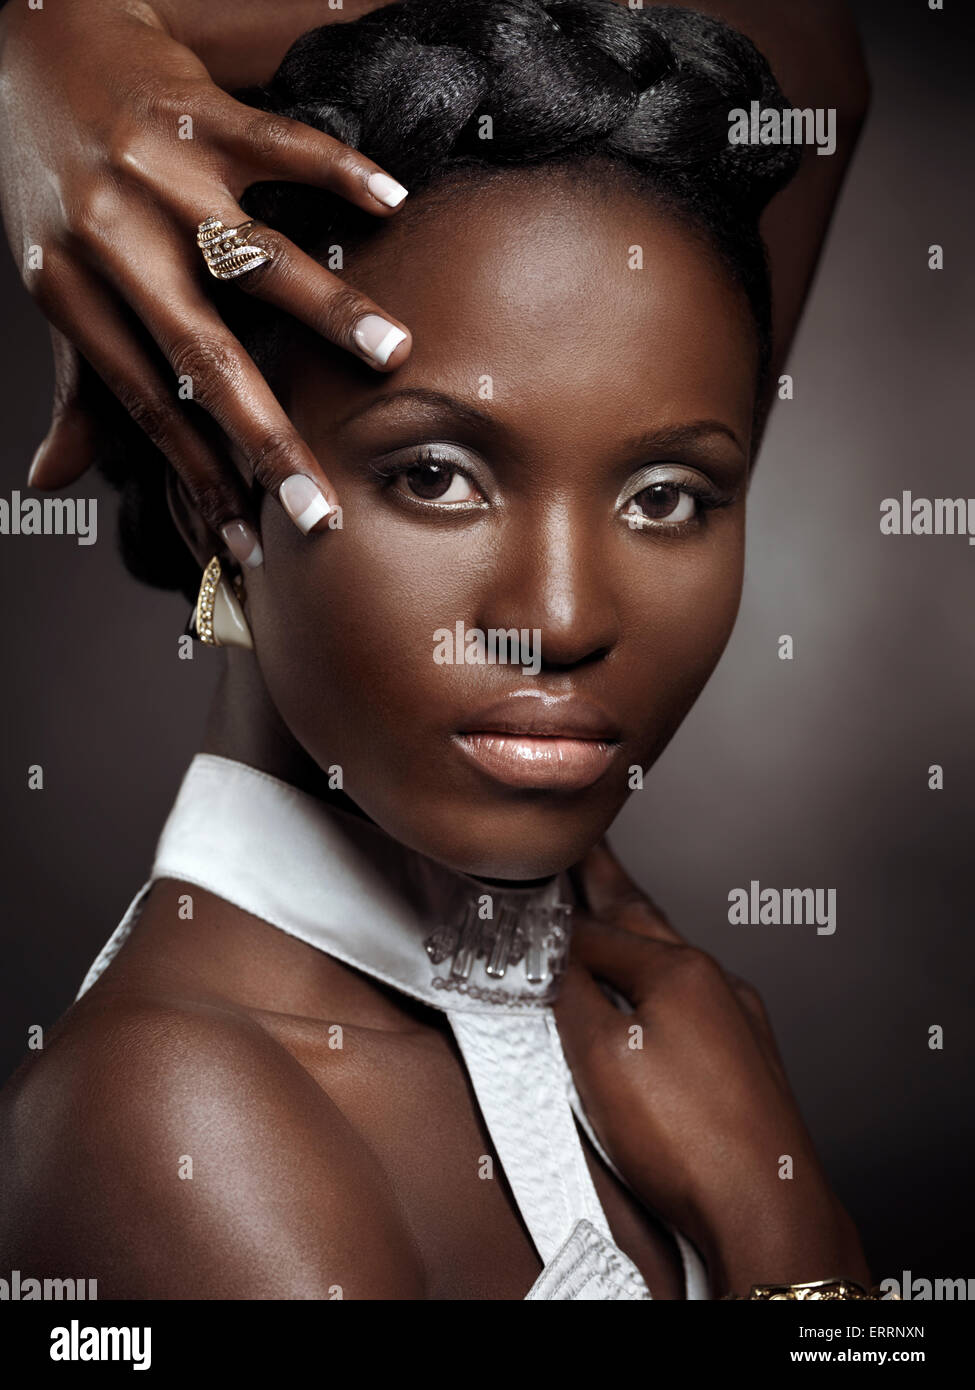 Führerschein und Fingerabdrücke bei MaximImages.com - wunderschöne junge afroamerikanische Frau mit großen Haaren, die Schmuck trägt, künstlerisches Schönheitsporträt auf Braun Stockfoto